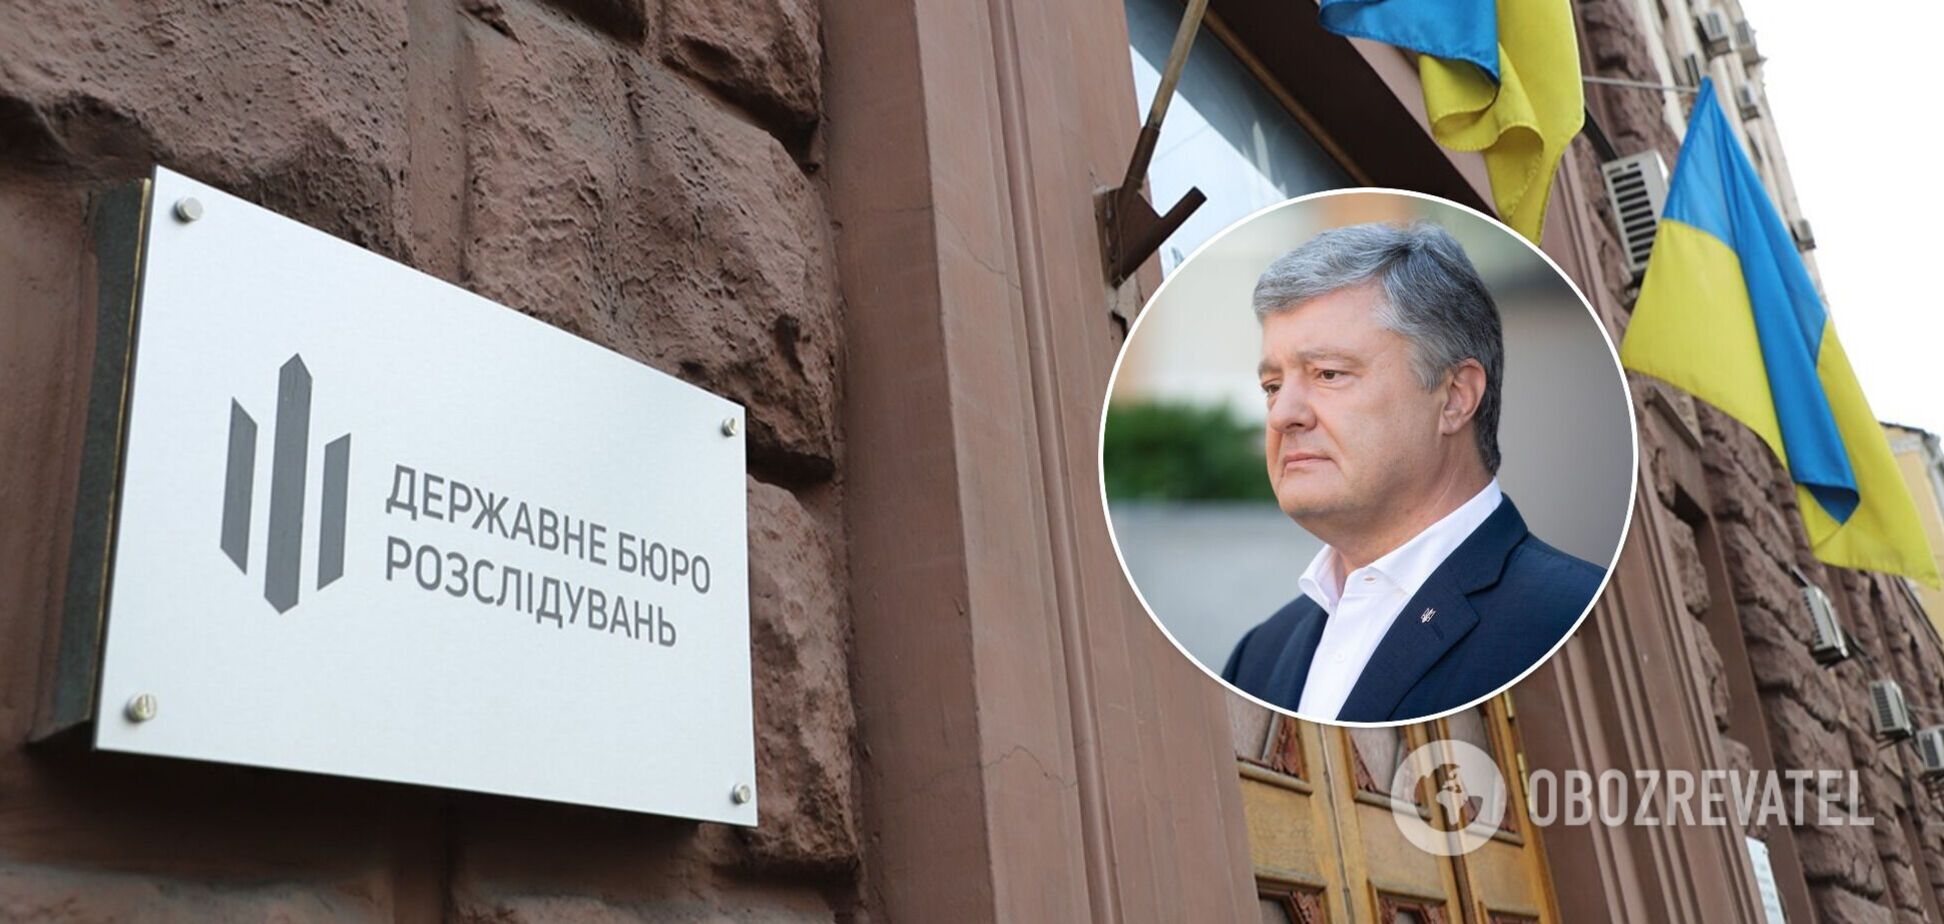 ГБР до сих пор не закрыло 'дело моряков' против Порошенко, потому что подыгрывает России, – Головань